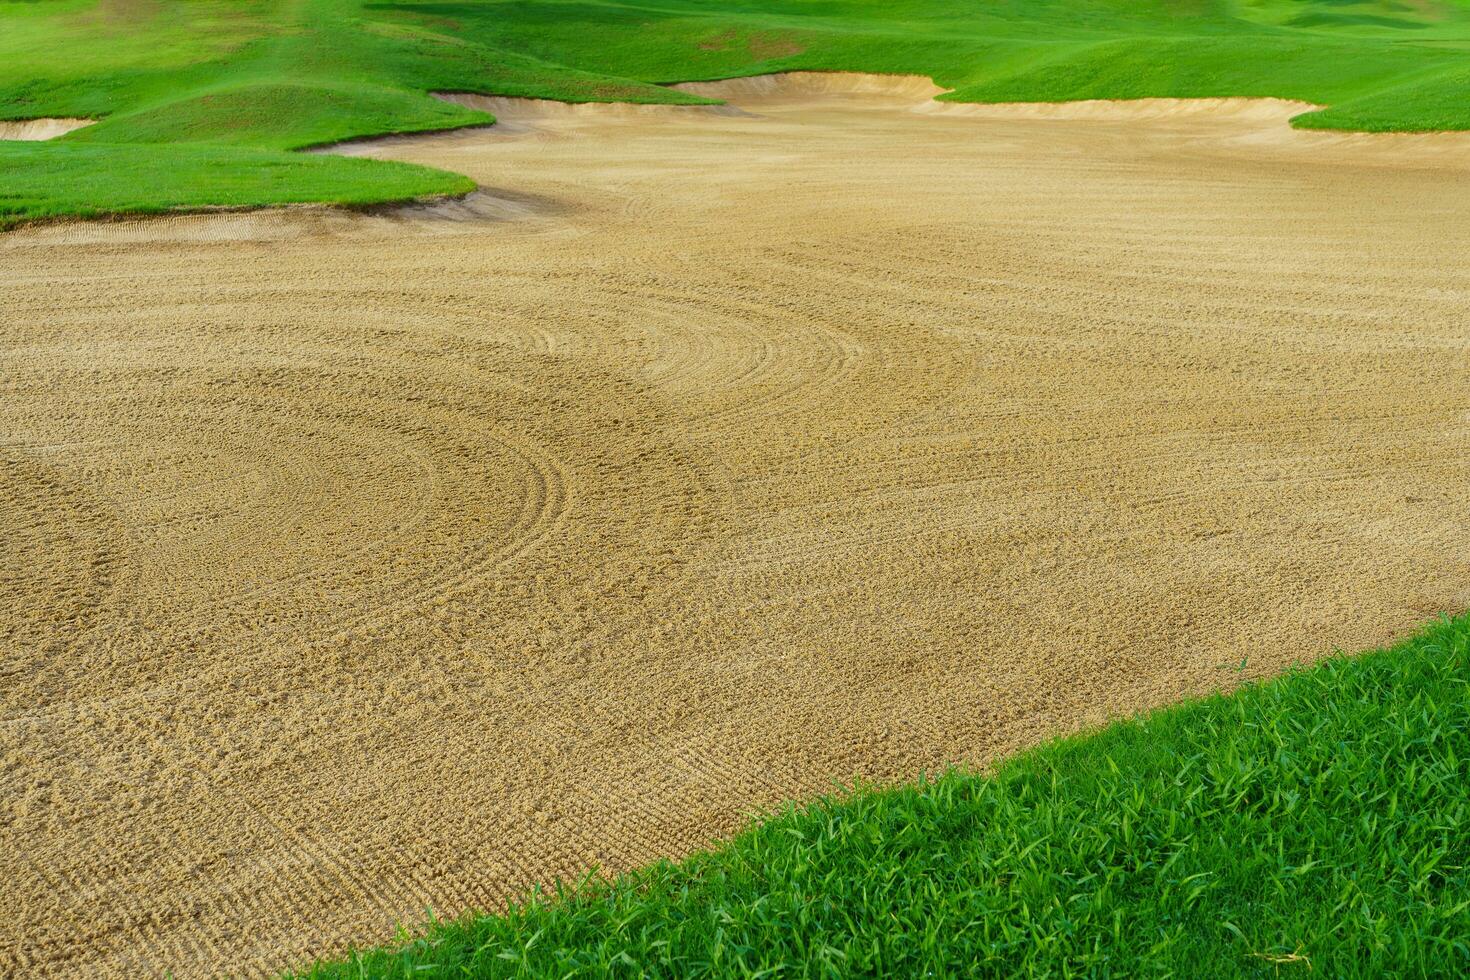 golf Cursus zand pit bunkers, groen gras omgeving de mooi zand gaten is een van de meest uitdagend obstakels voor golfers en voegt toe naar de schoonheid van de golf Cursus. foto